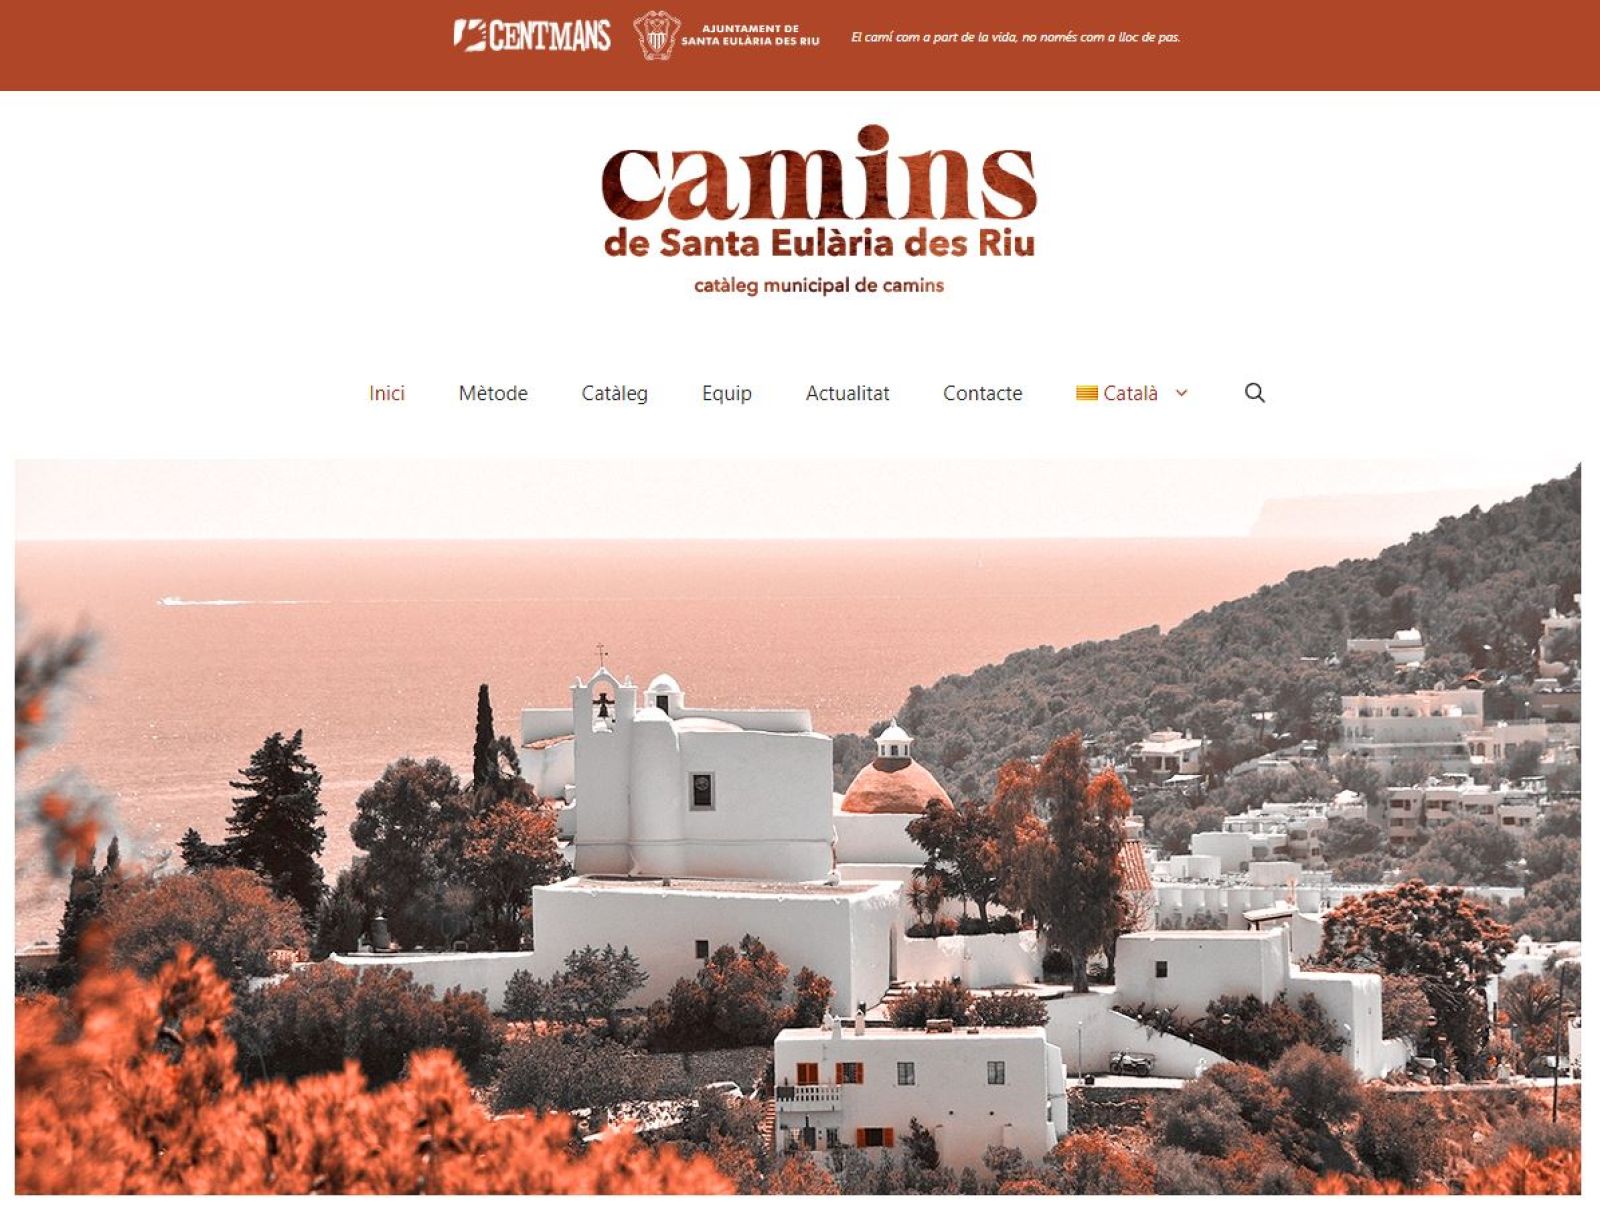 Nueva web para dar a conocer el proyecto de redacción de un Catálogo Municipal de Caminos de Santa Eulària